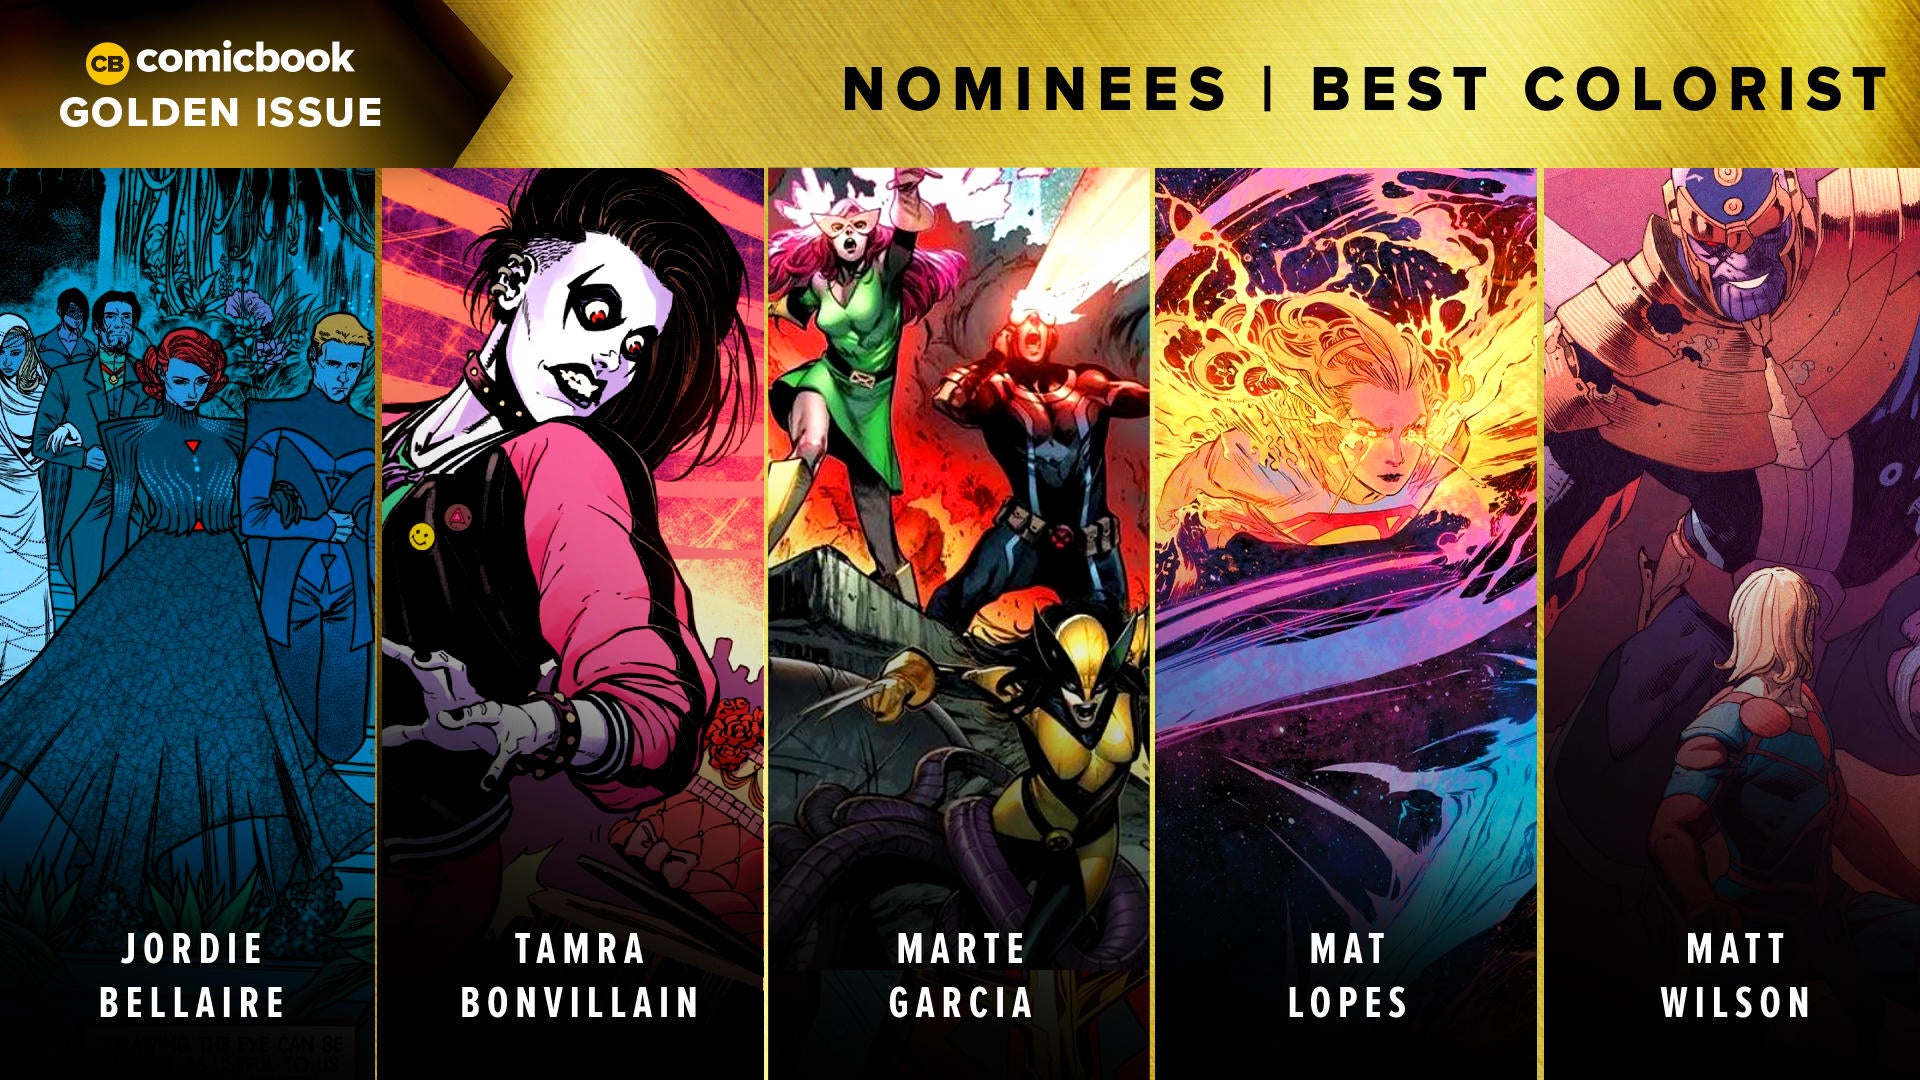 golden-issues-2021-nominees-best-colorist.jpg